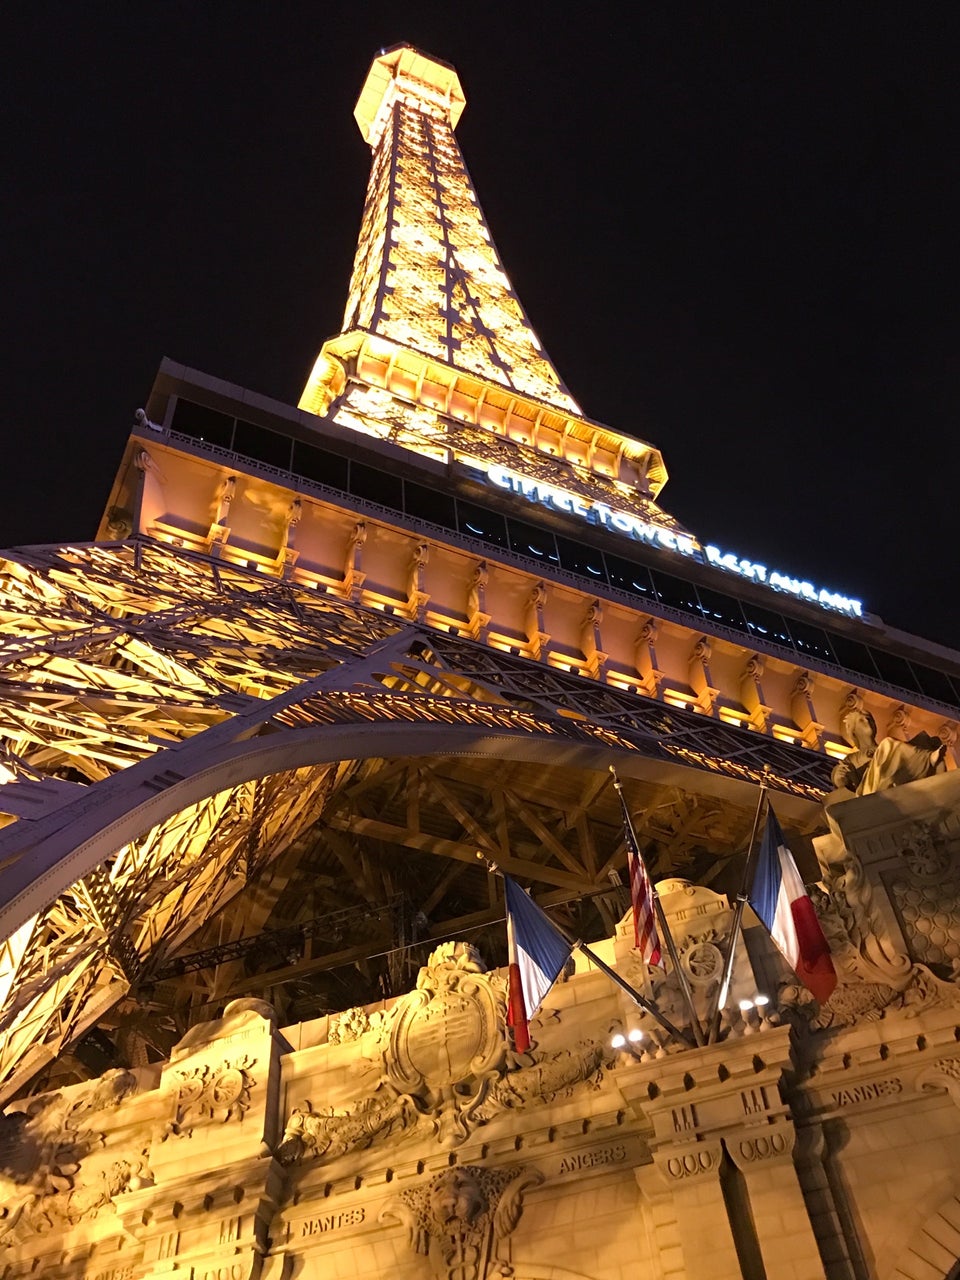 Vanderpump à Paris reviews, photos - Las Vegas - GayCities Las Vegas